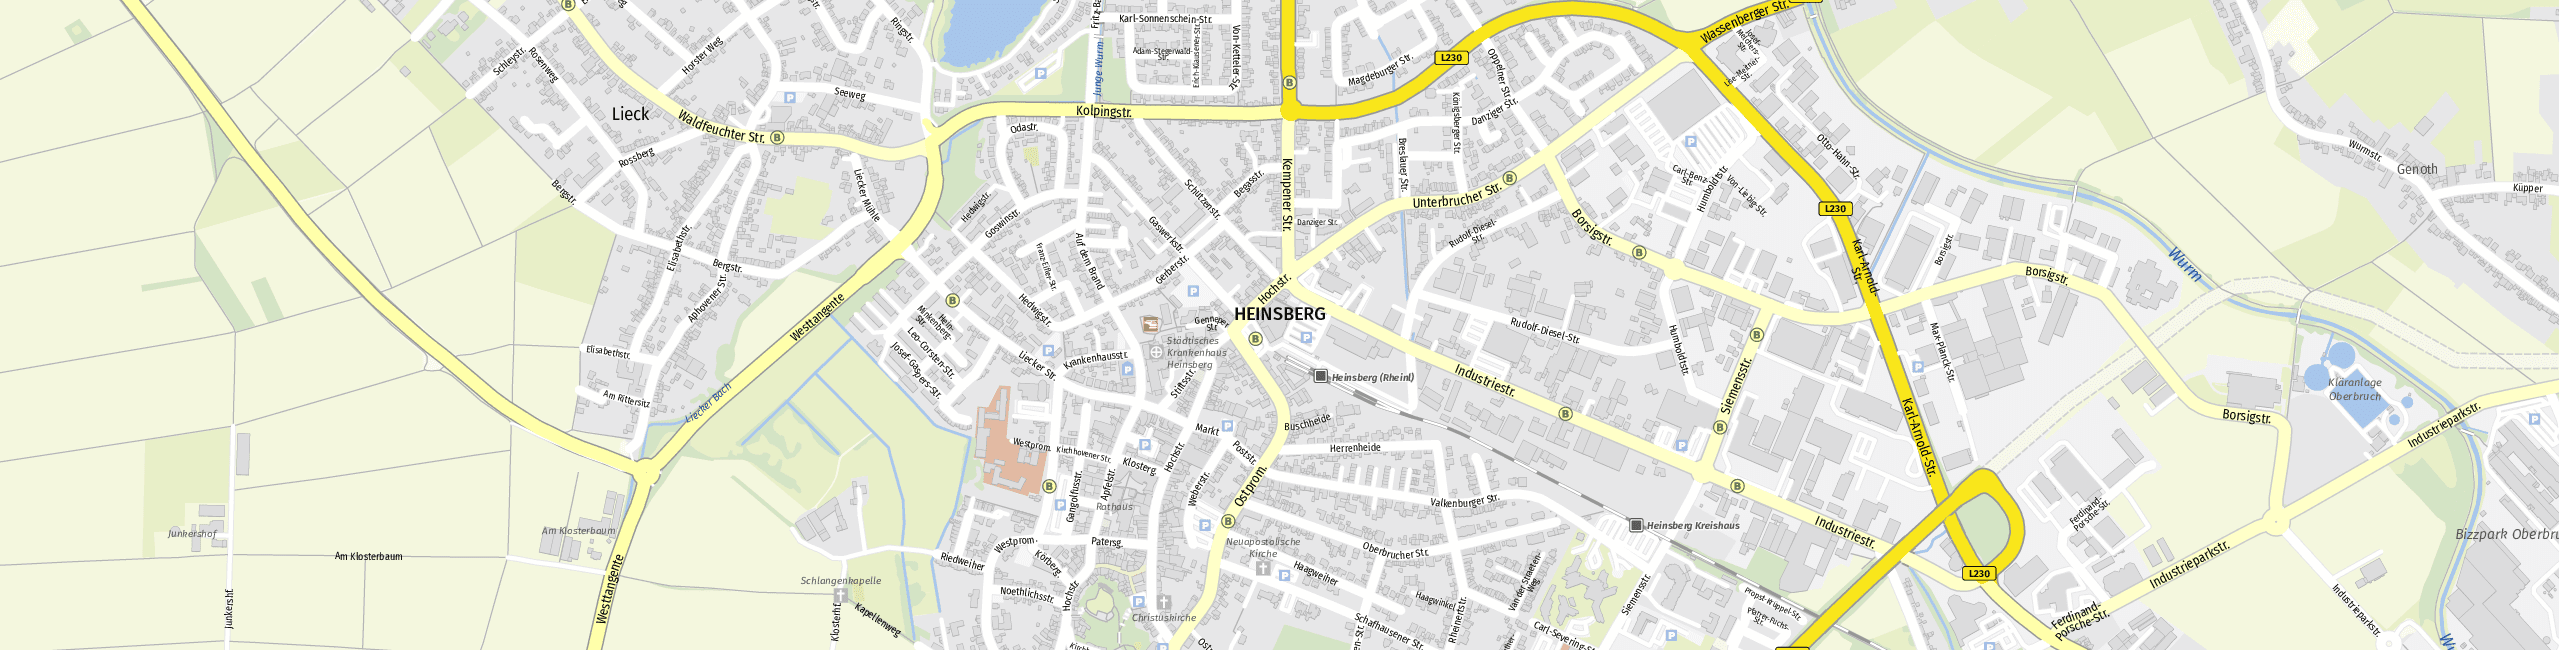 Stadtplan Heinsberg zum Downloaden.